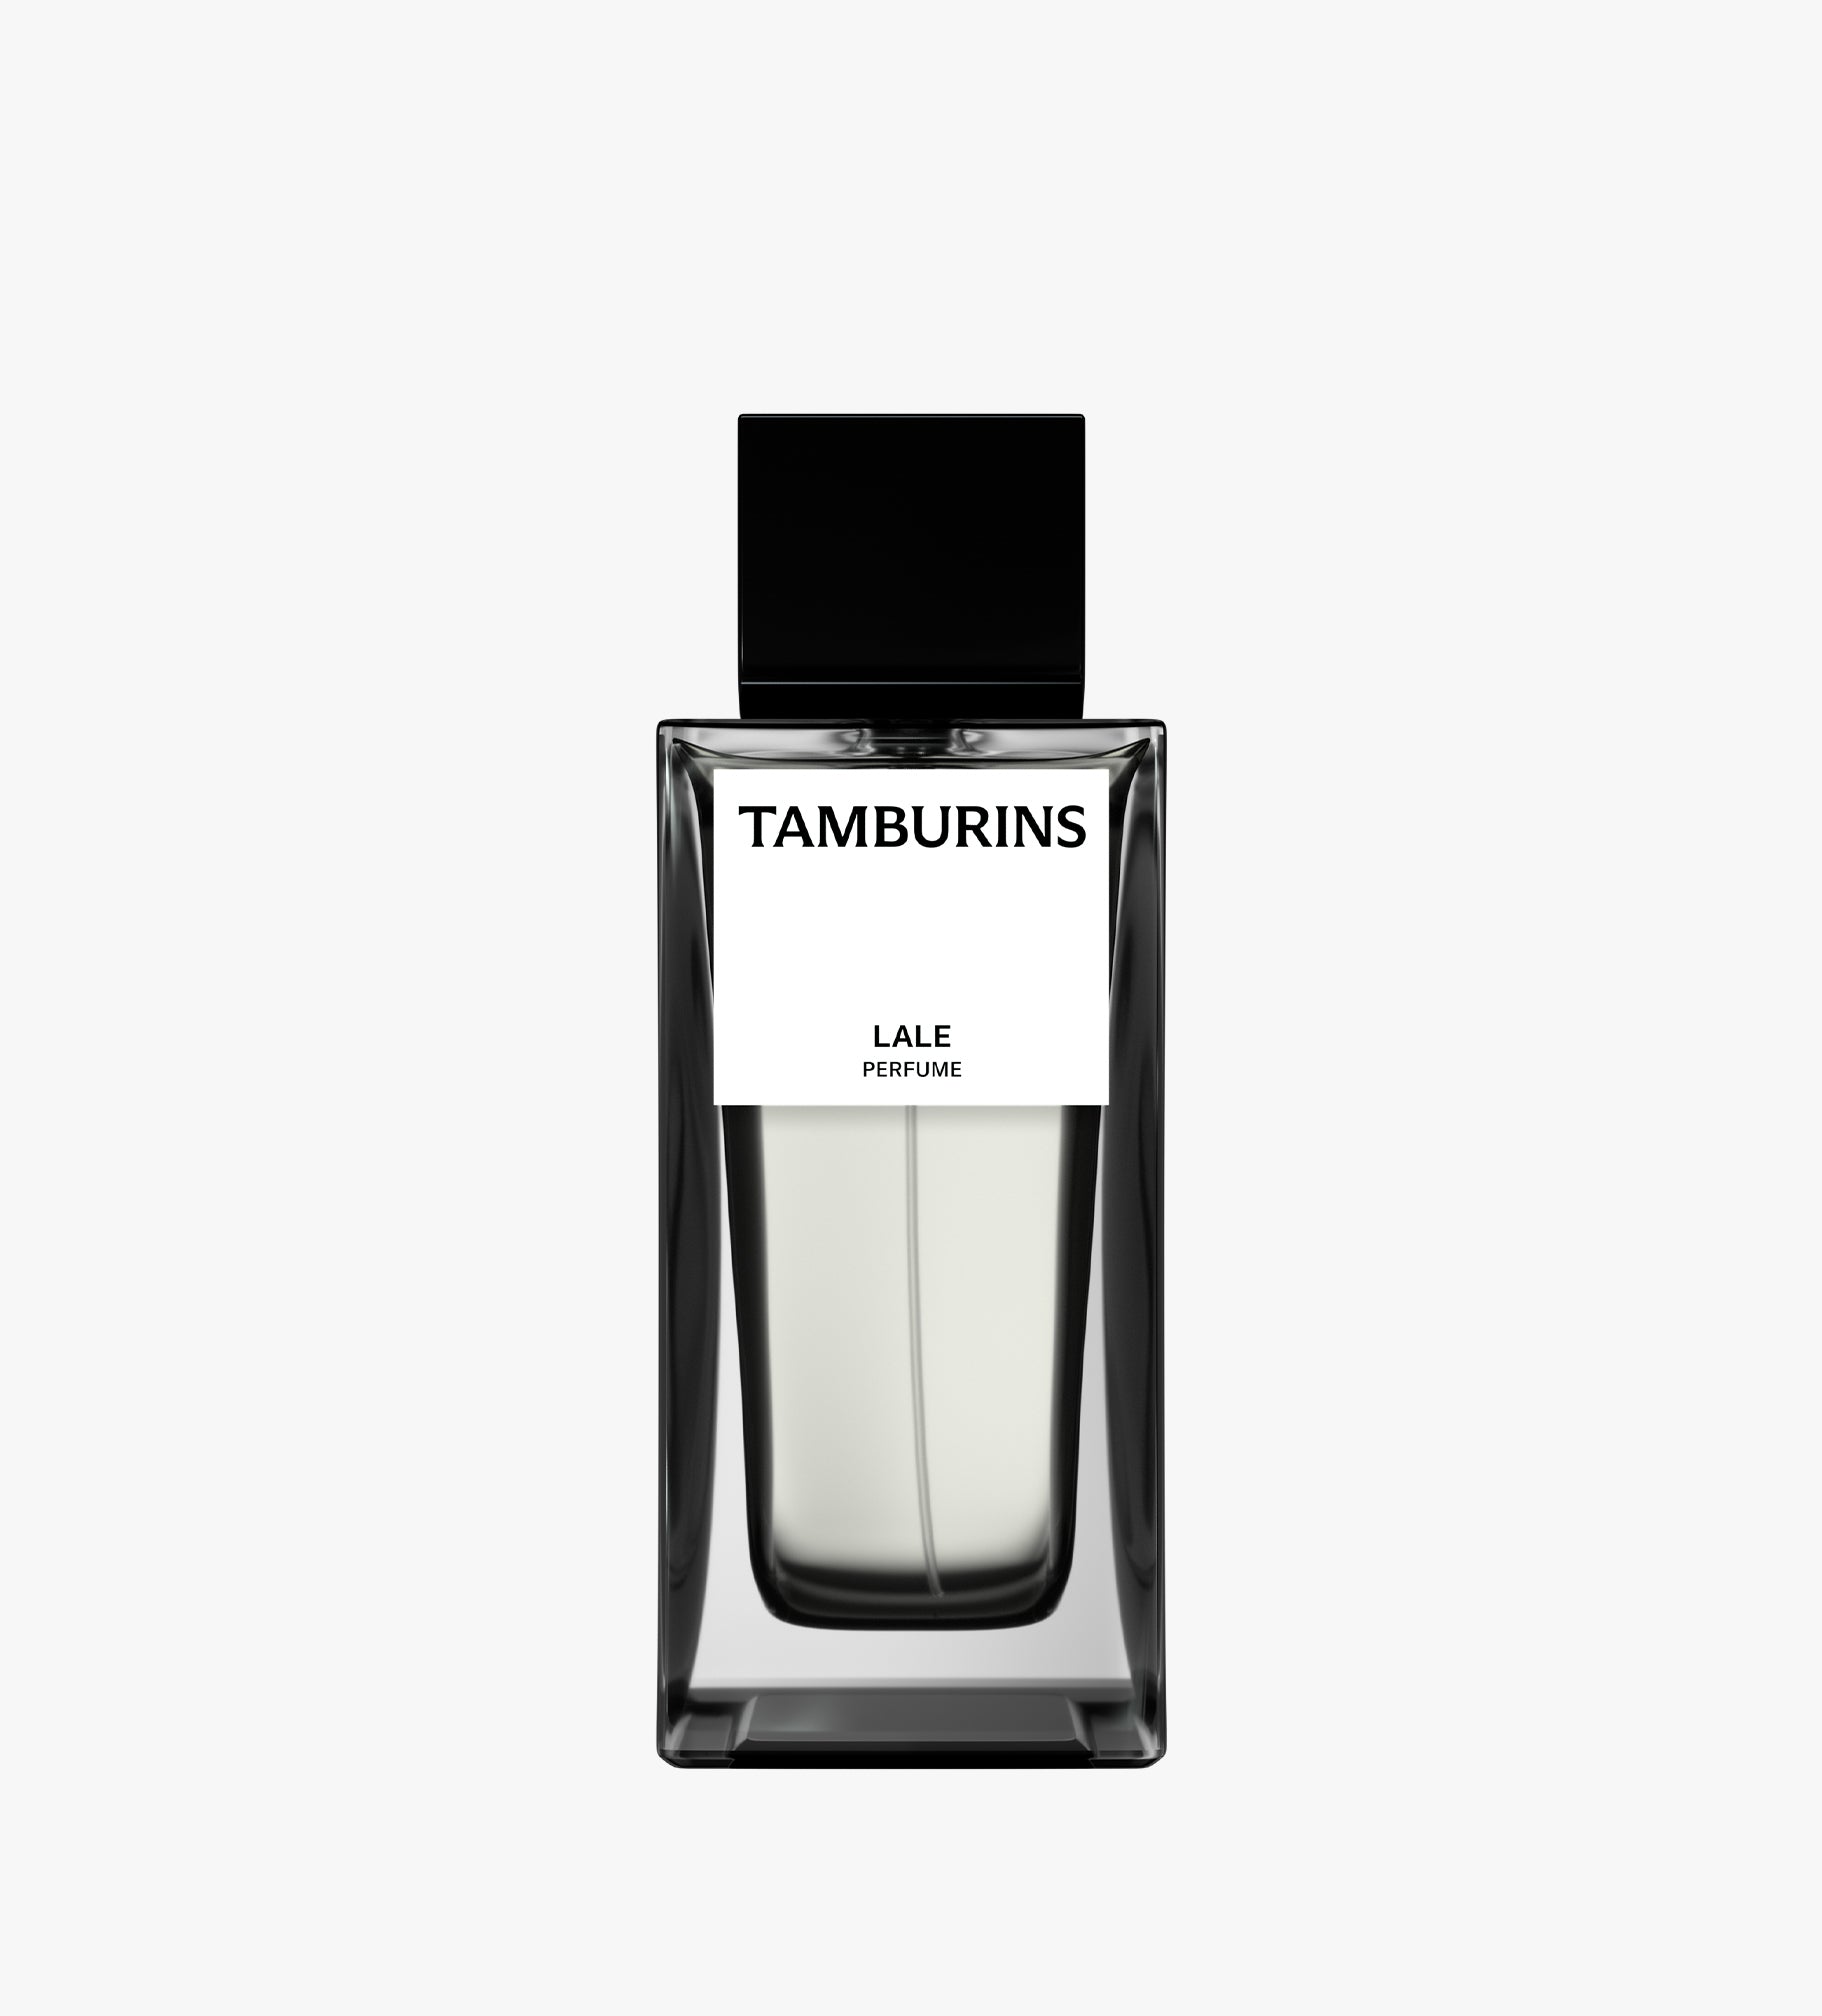 Tamburins Perfume - Lale